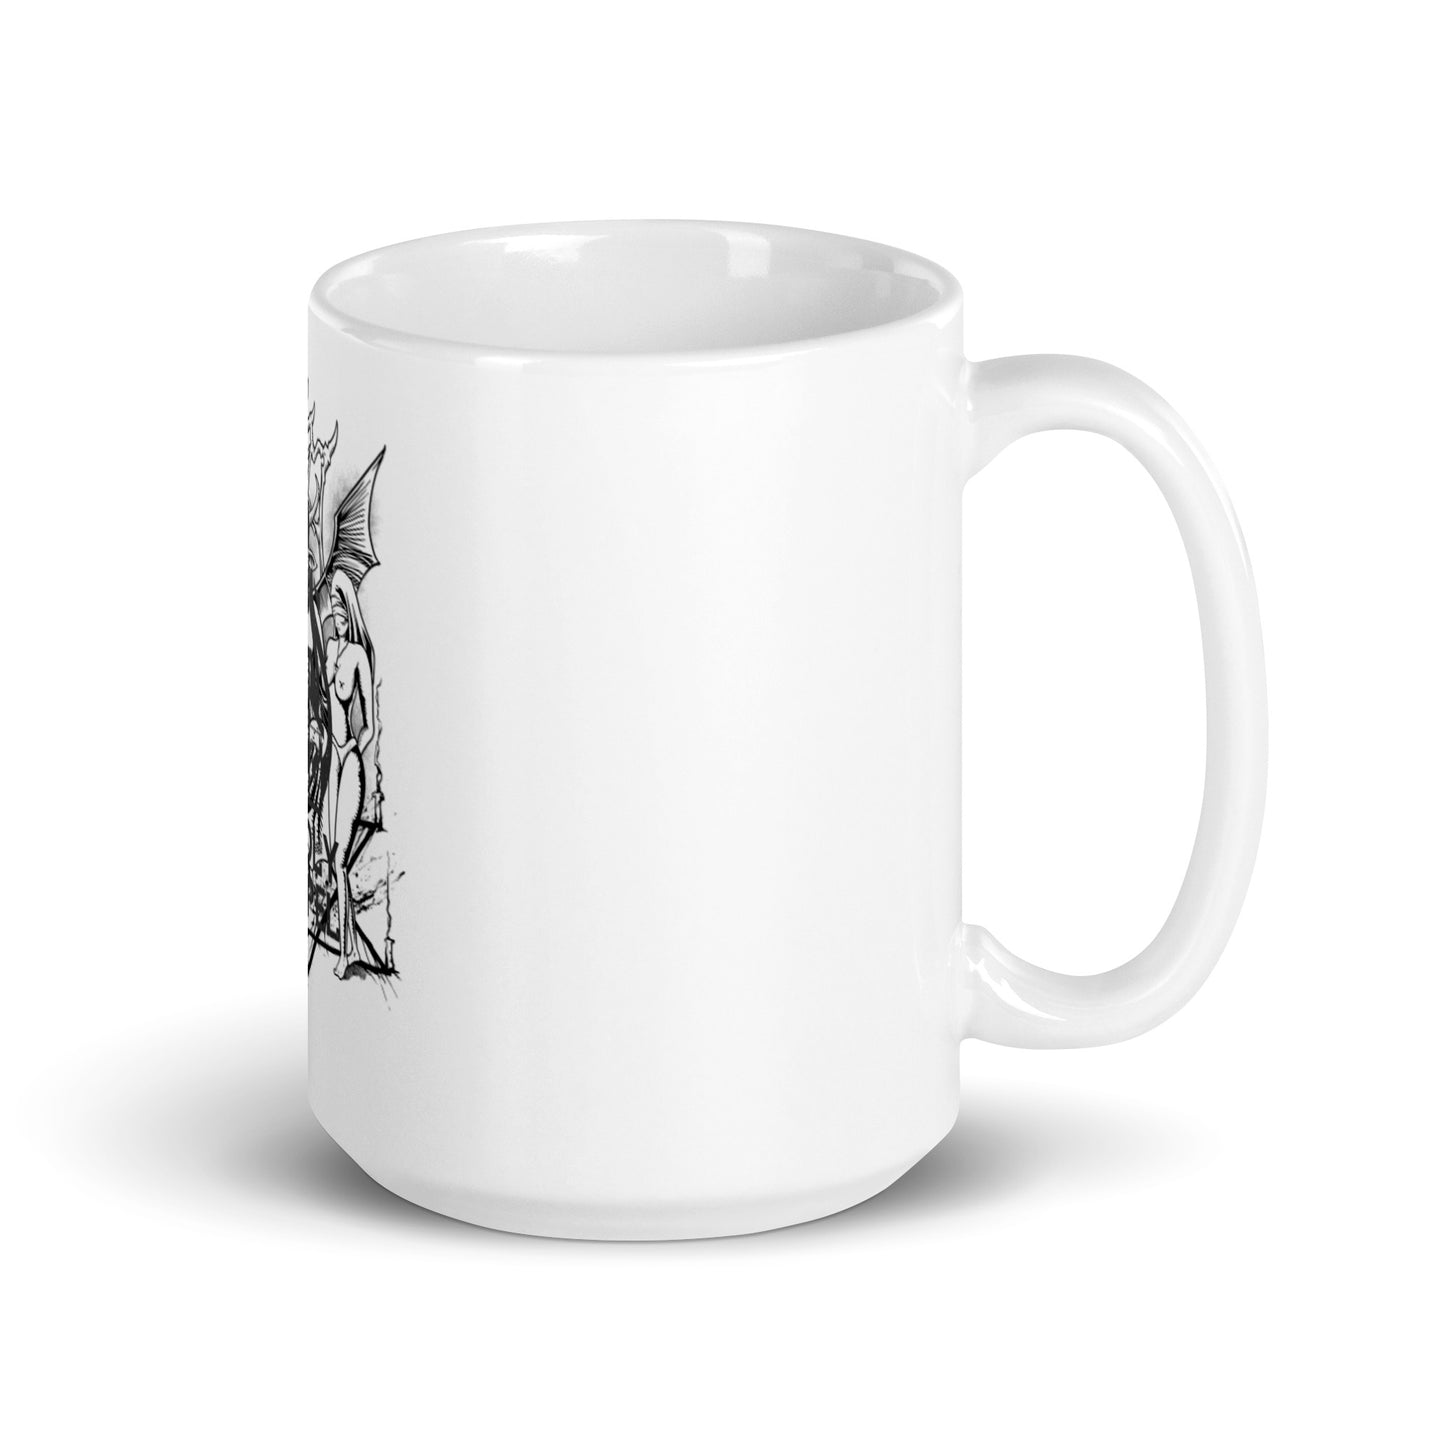 Baphomet mug